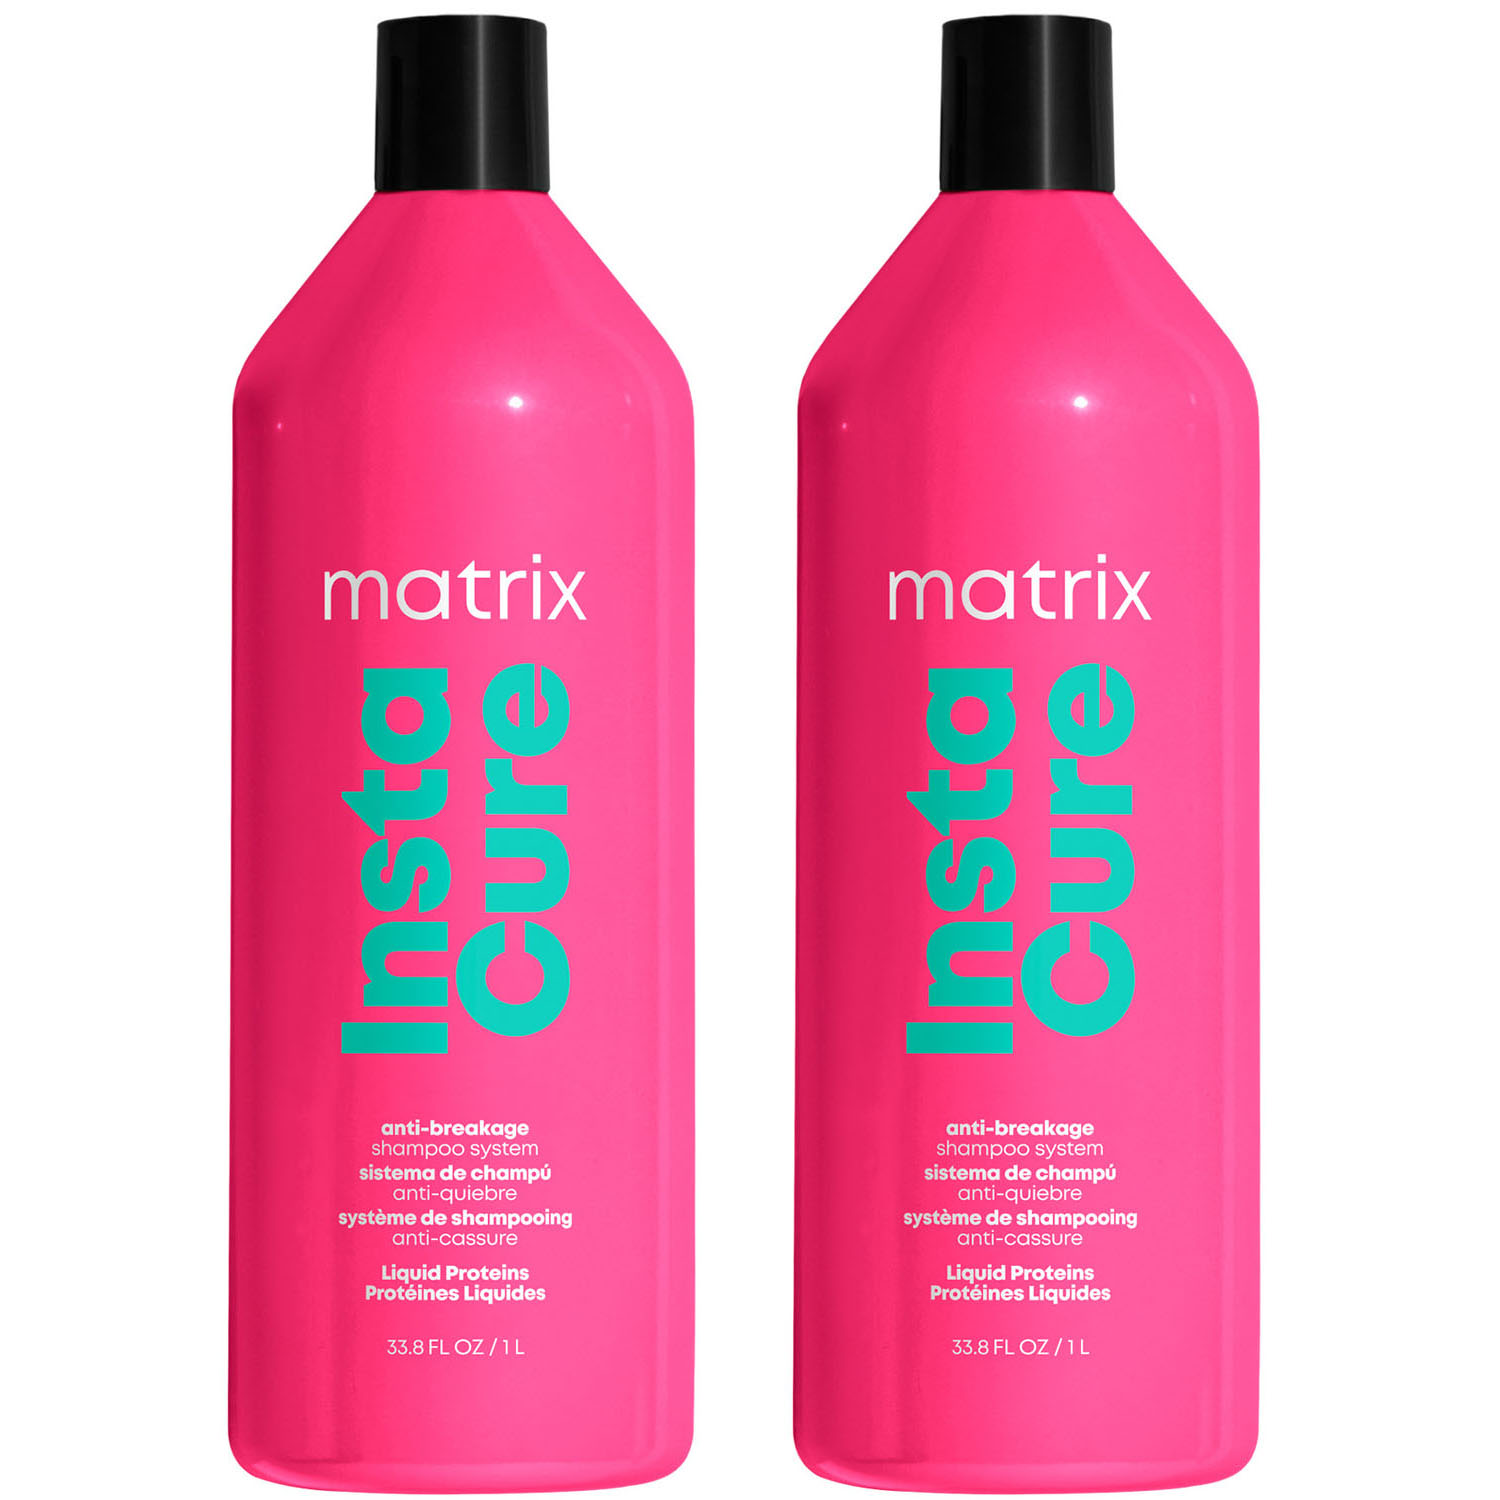 Matrix Профессиональный шампунь Instacure для восстановления волос с жидким протеином, 1000 мл х 2 шт (Matrix, Total Results) шампунь против ломкости instacure 300 мл